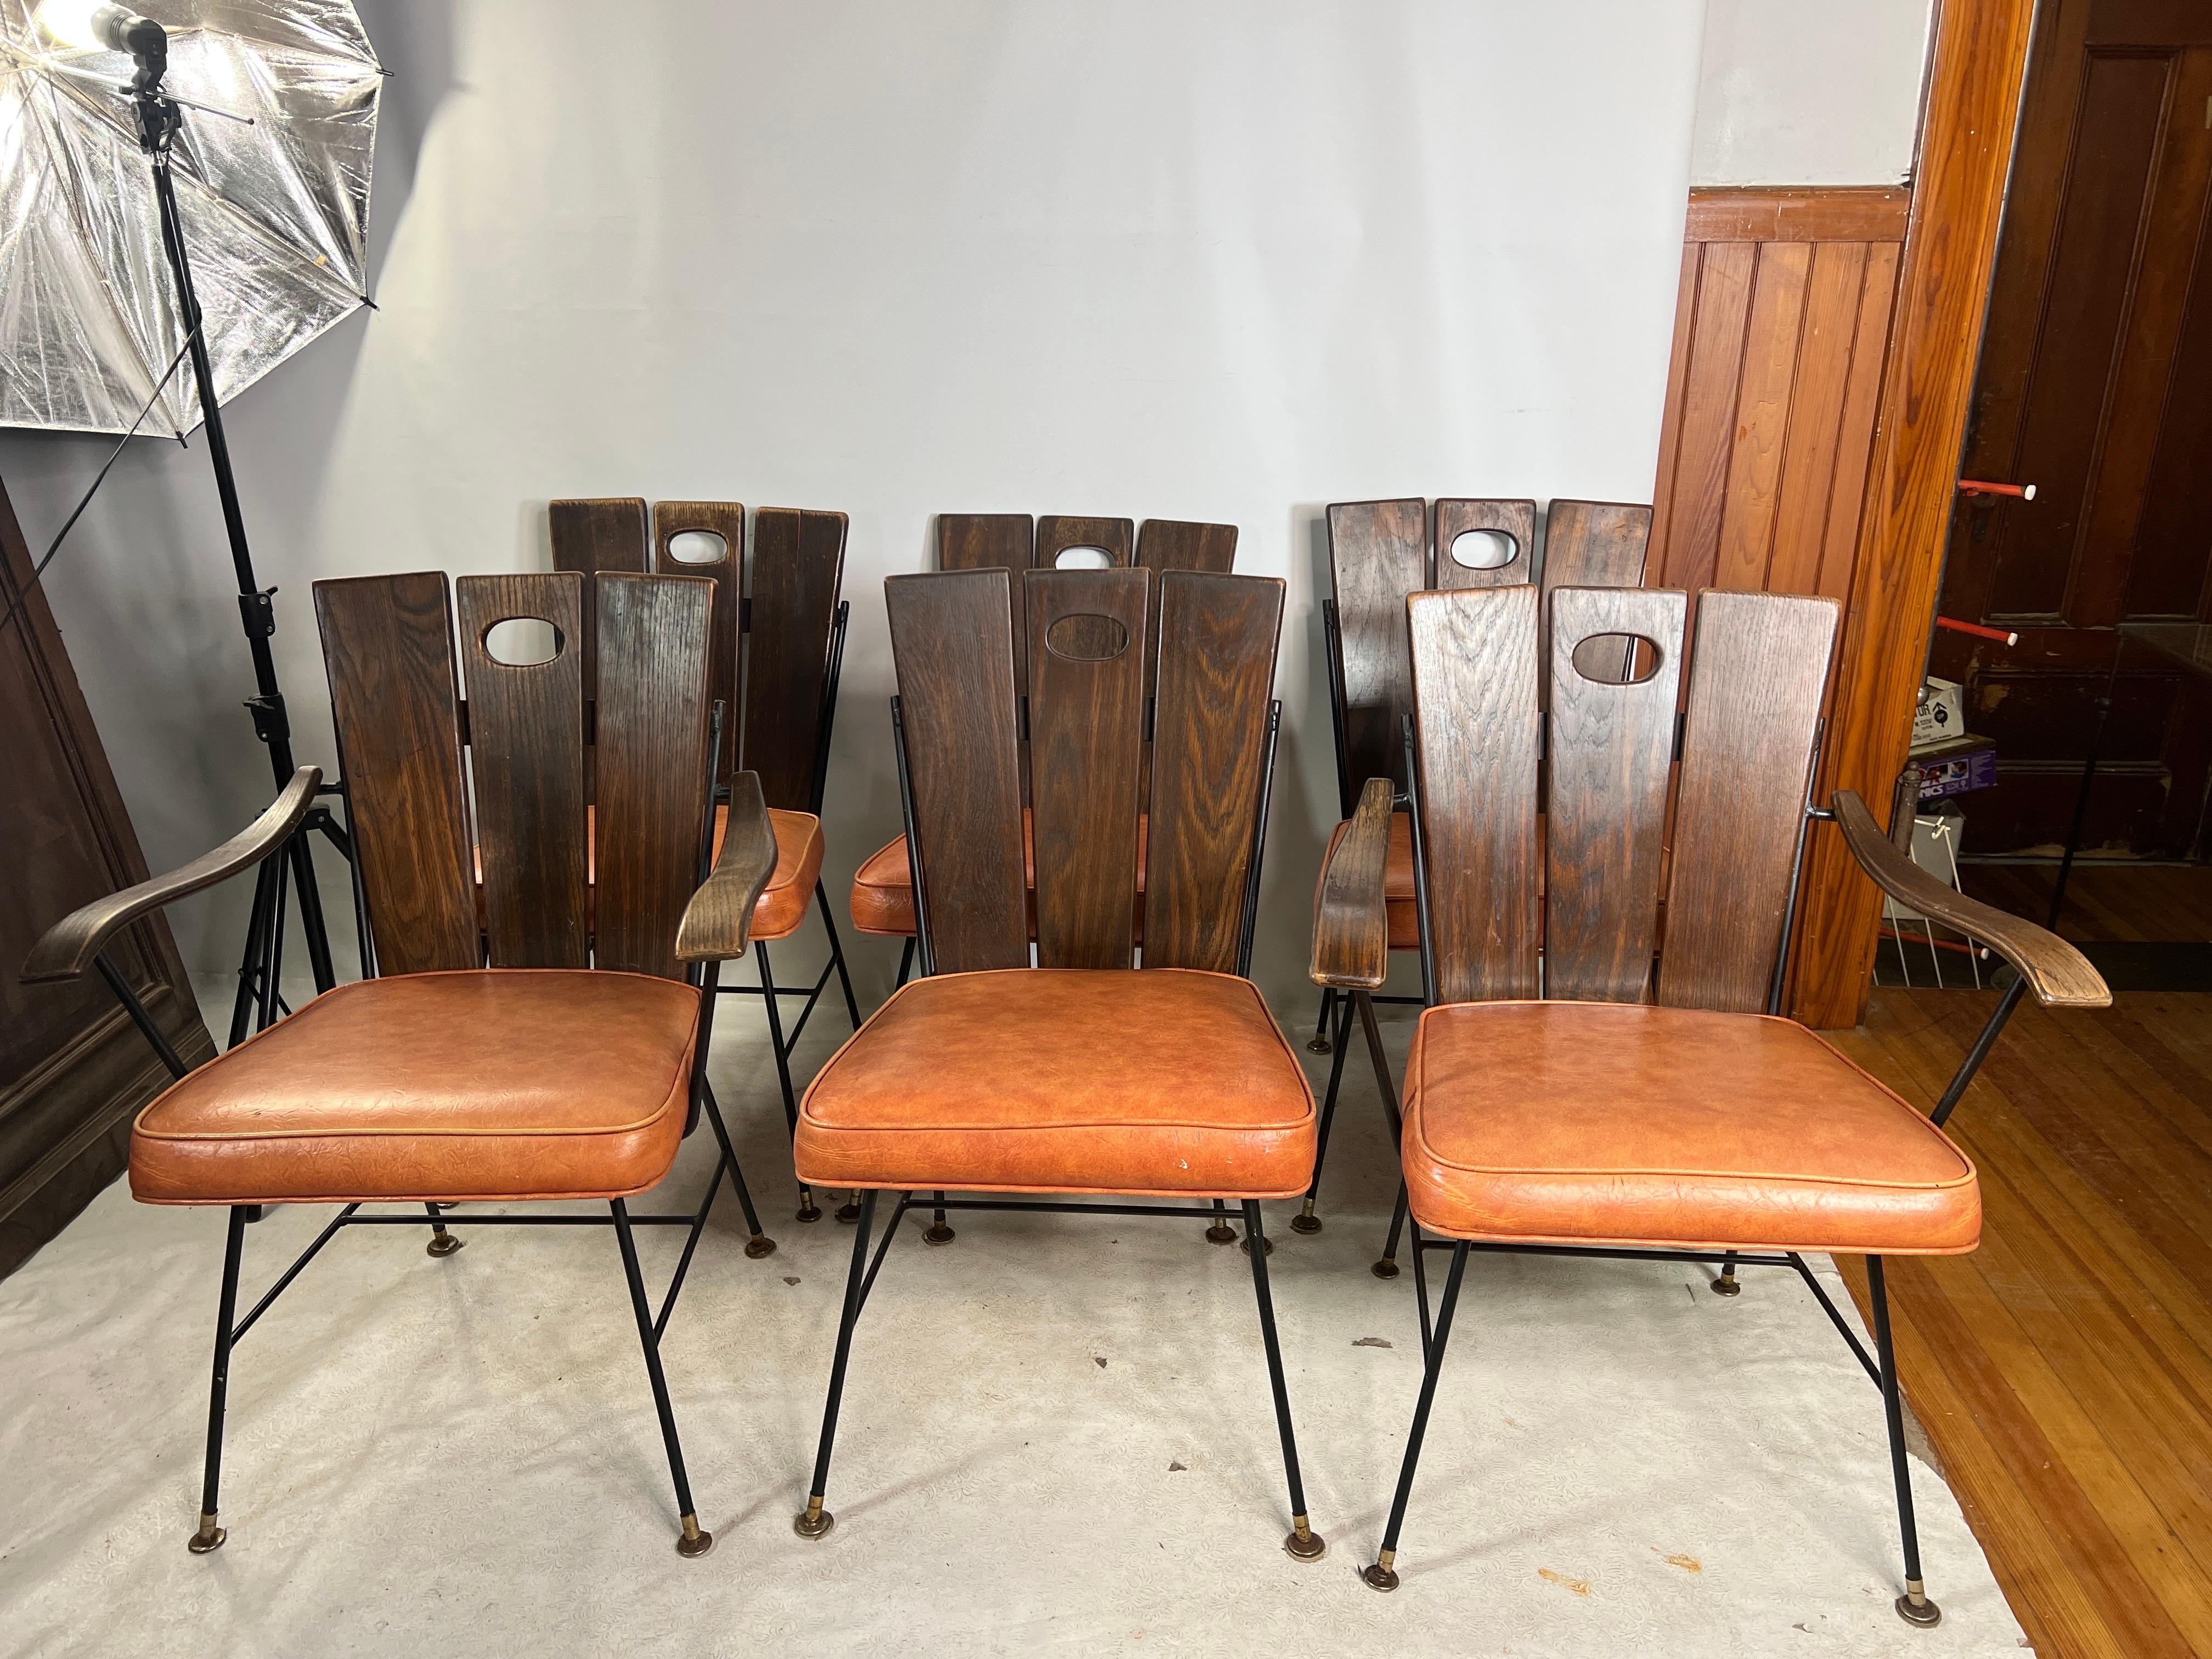 Nous proposons à la vente un lot de 6 chaises de jardin en fonte de Richard McCarthy.

La largeur de la chaise de capitaine est de 
25